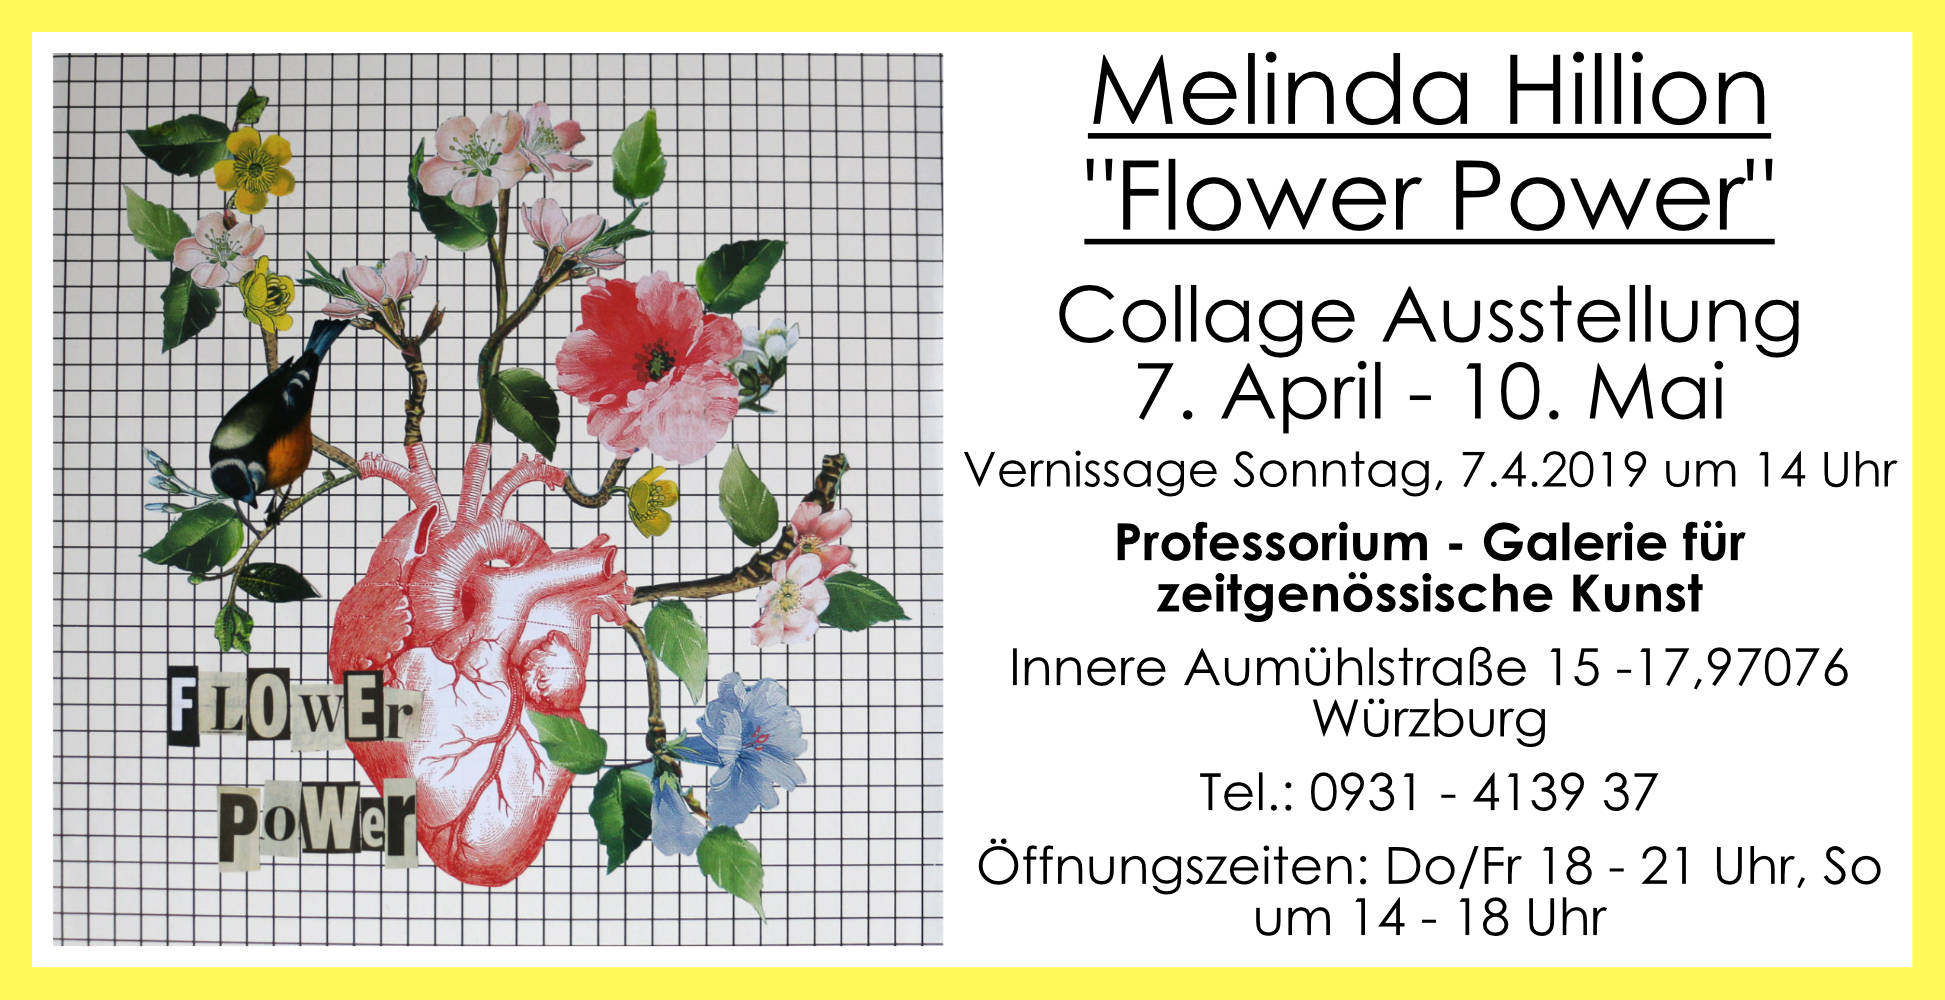 Melinda Hillion - Flower Power